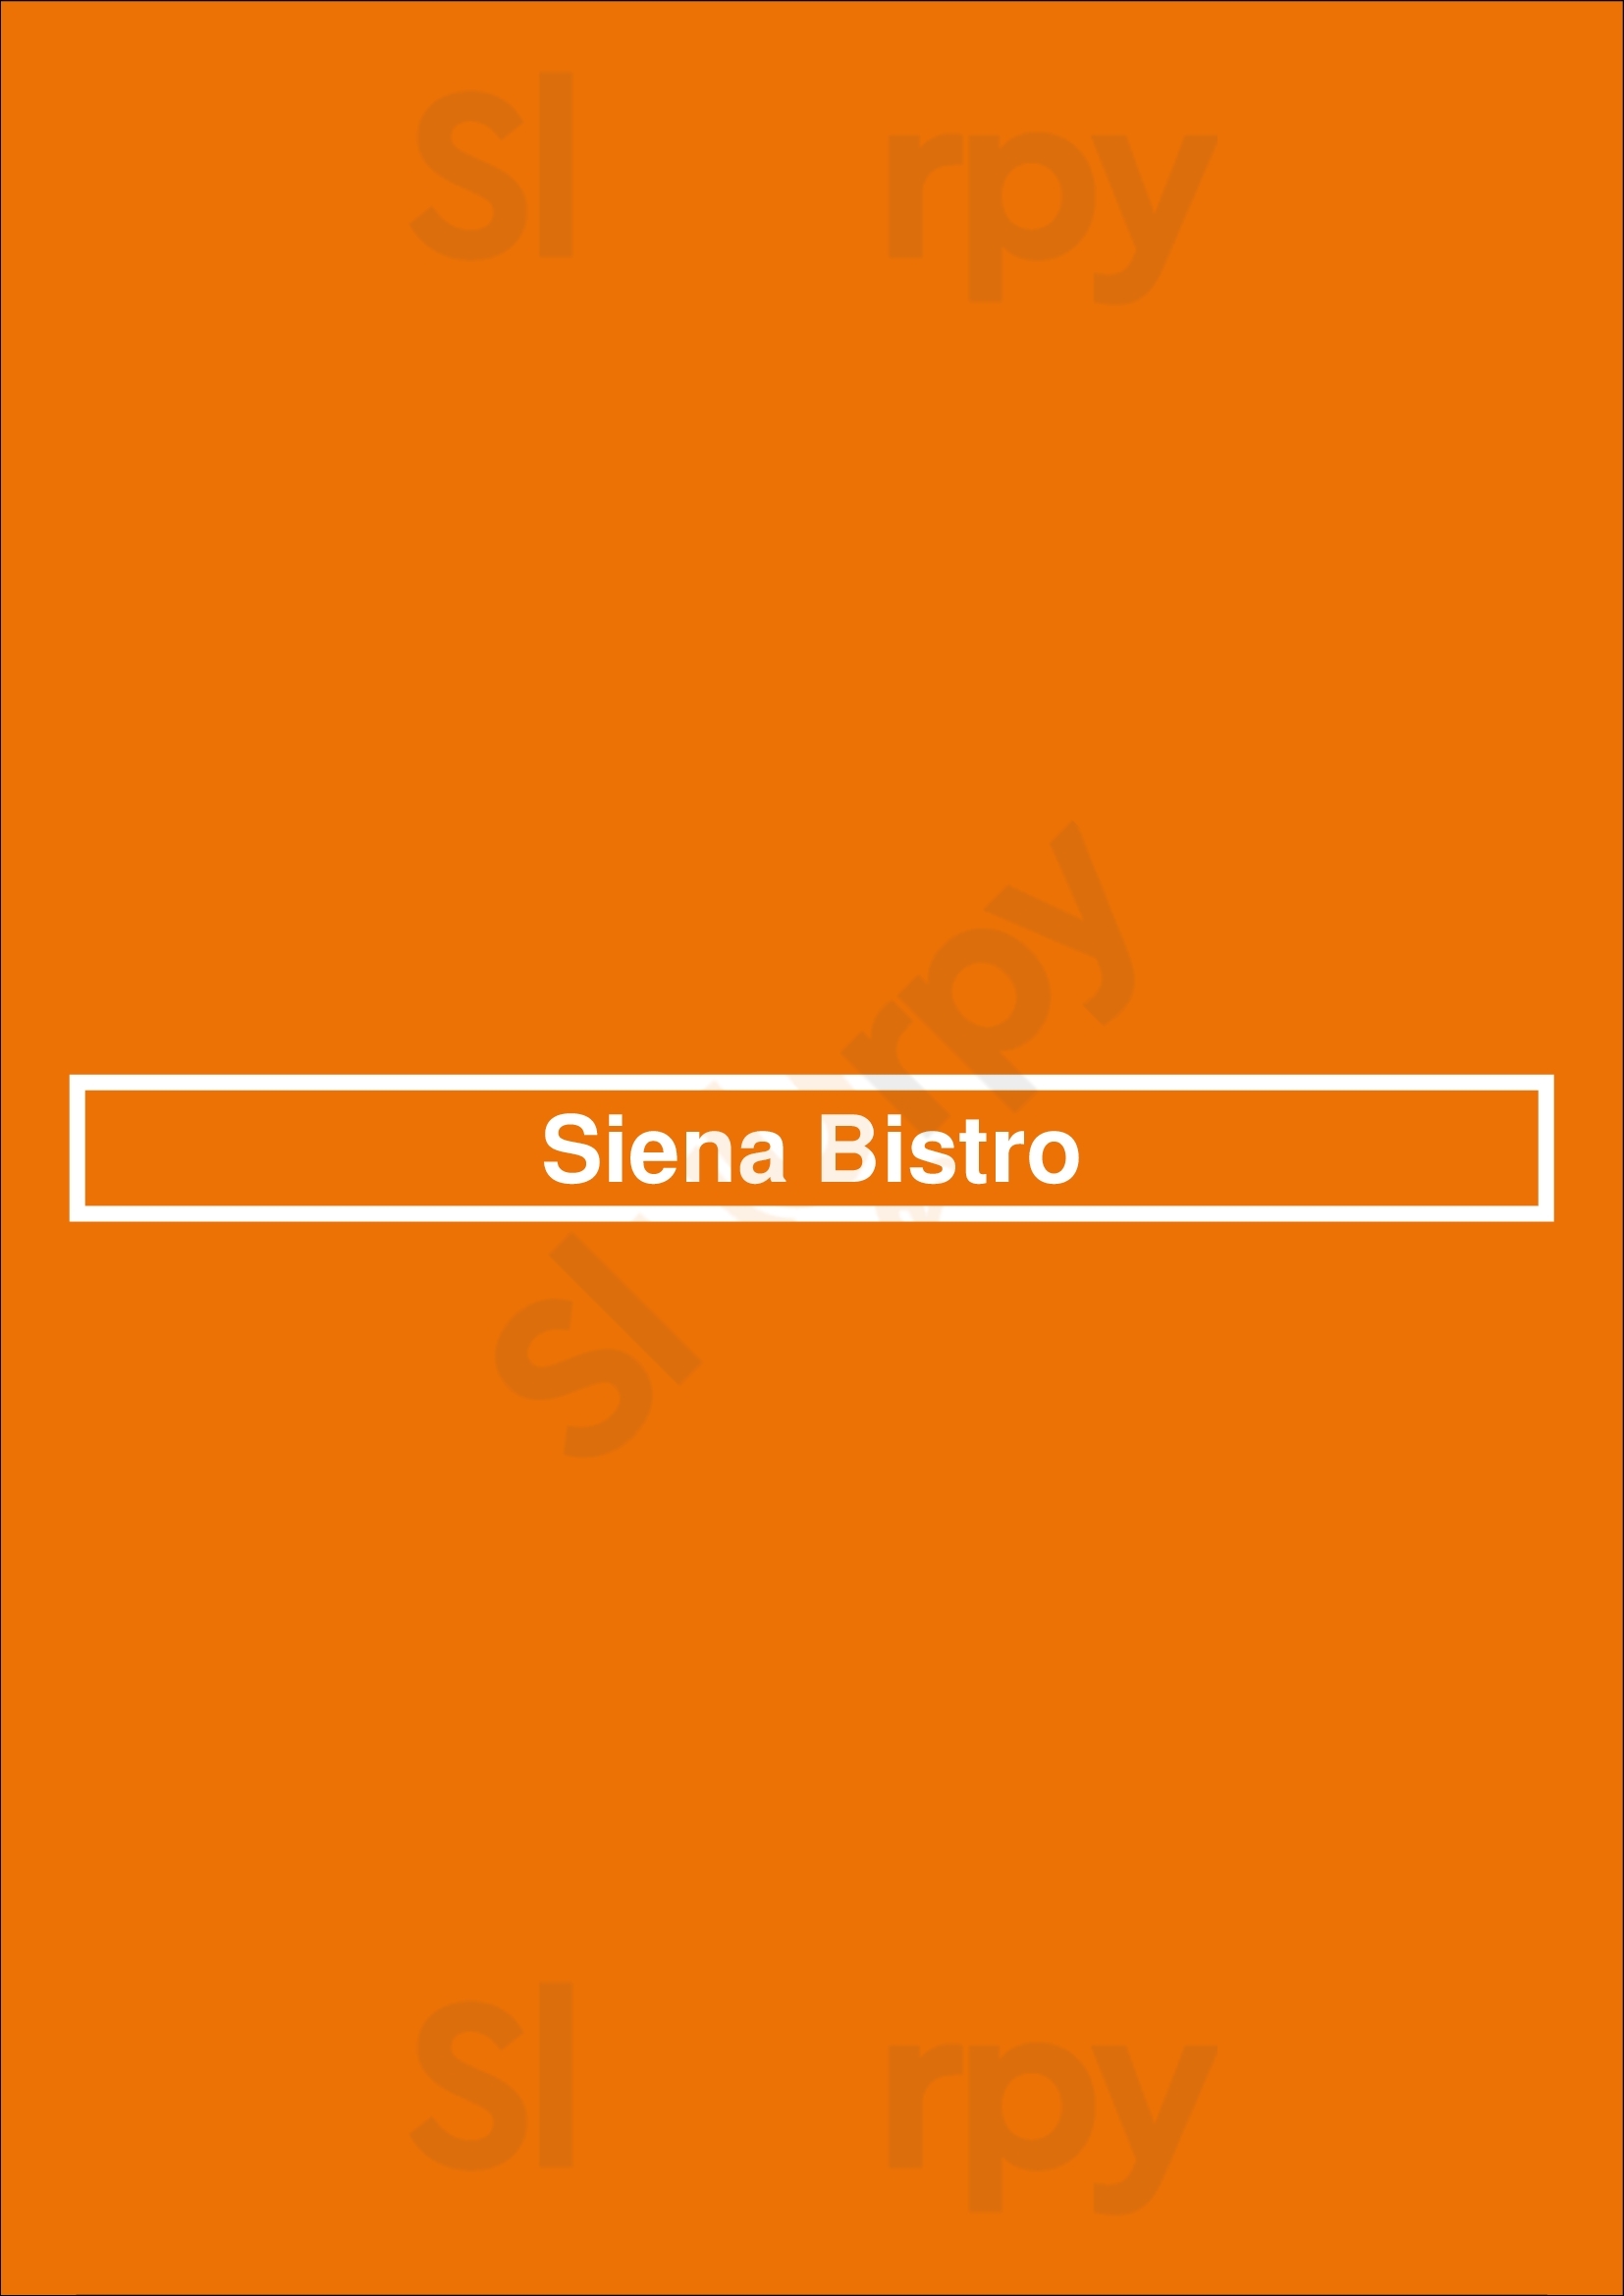 Siena Bistro Las Vegas Menu - 1